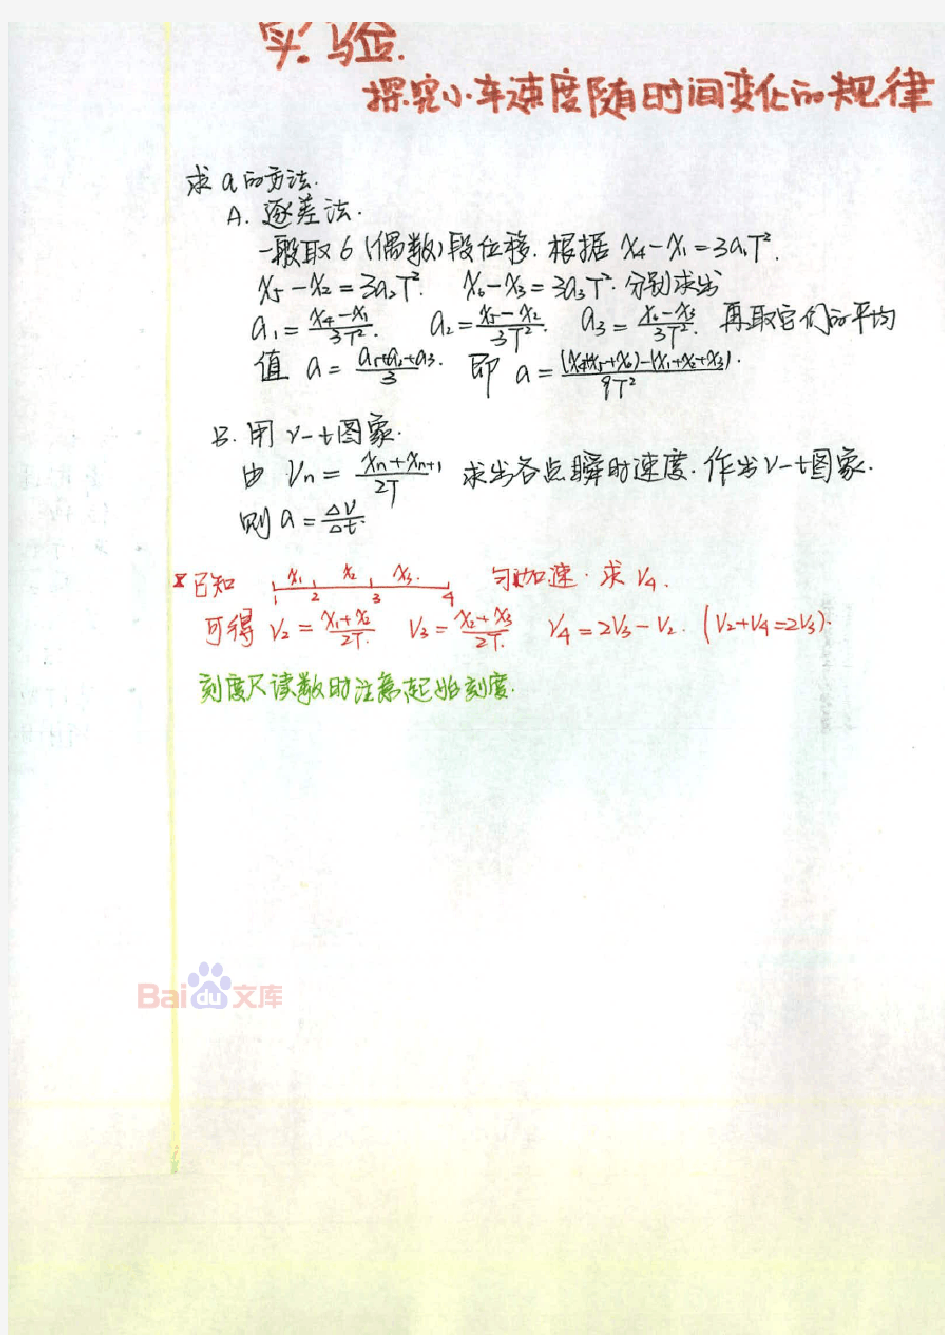 东北师大附中理科学霸高中物理笔记_2014高考状元笔记